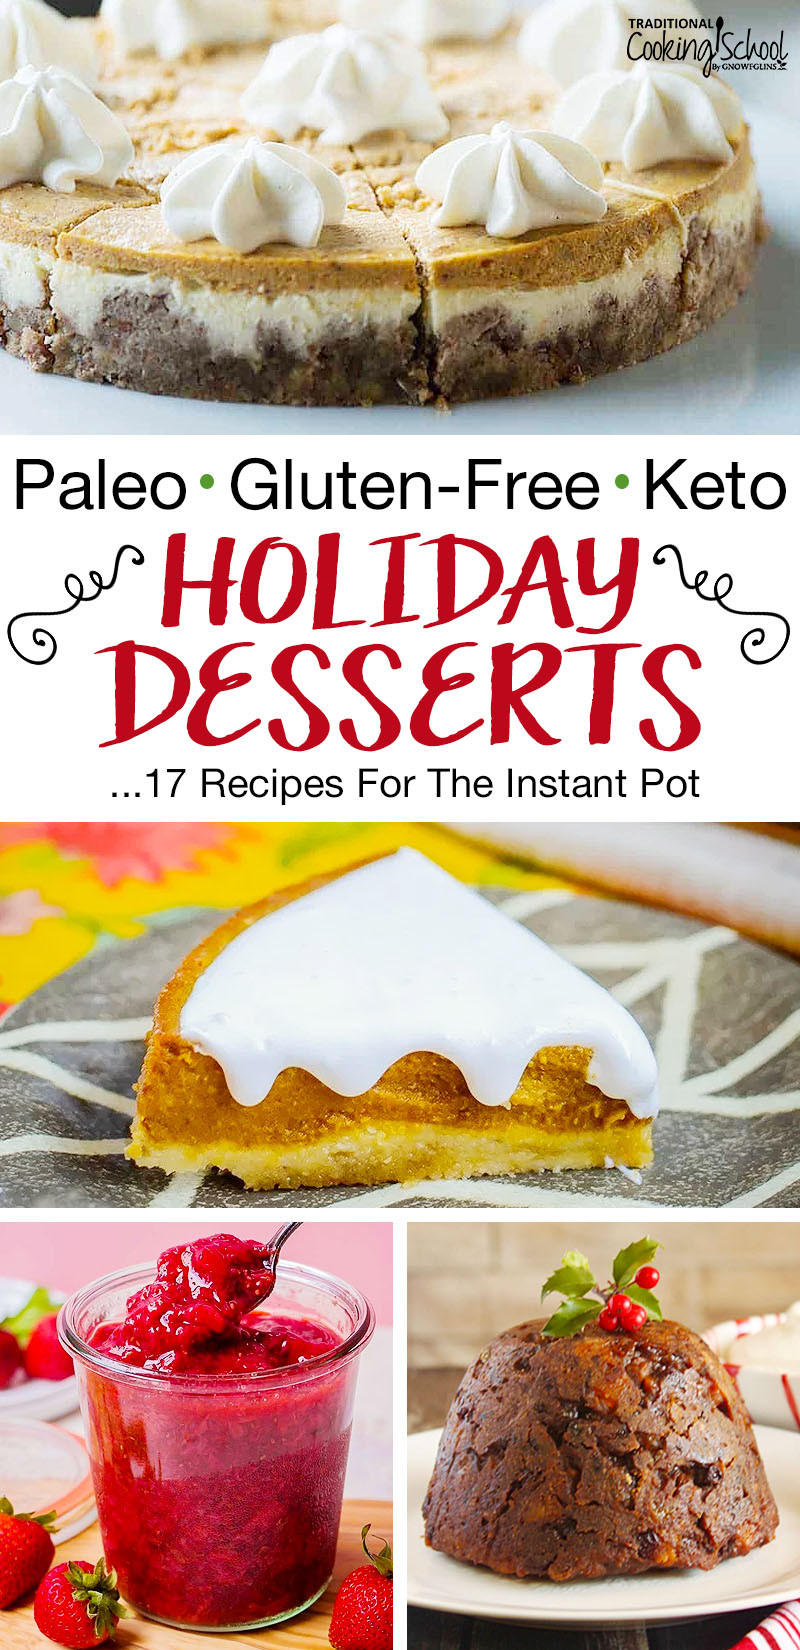 Instapot Keto Dessert Recipes
 17 Instant Pot Holiday Desserts Paleo Gluten Free & Keto